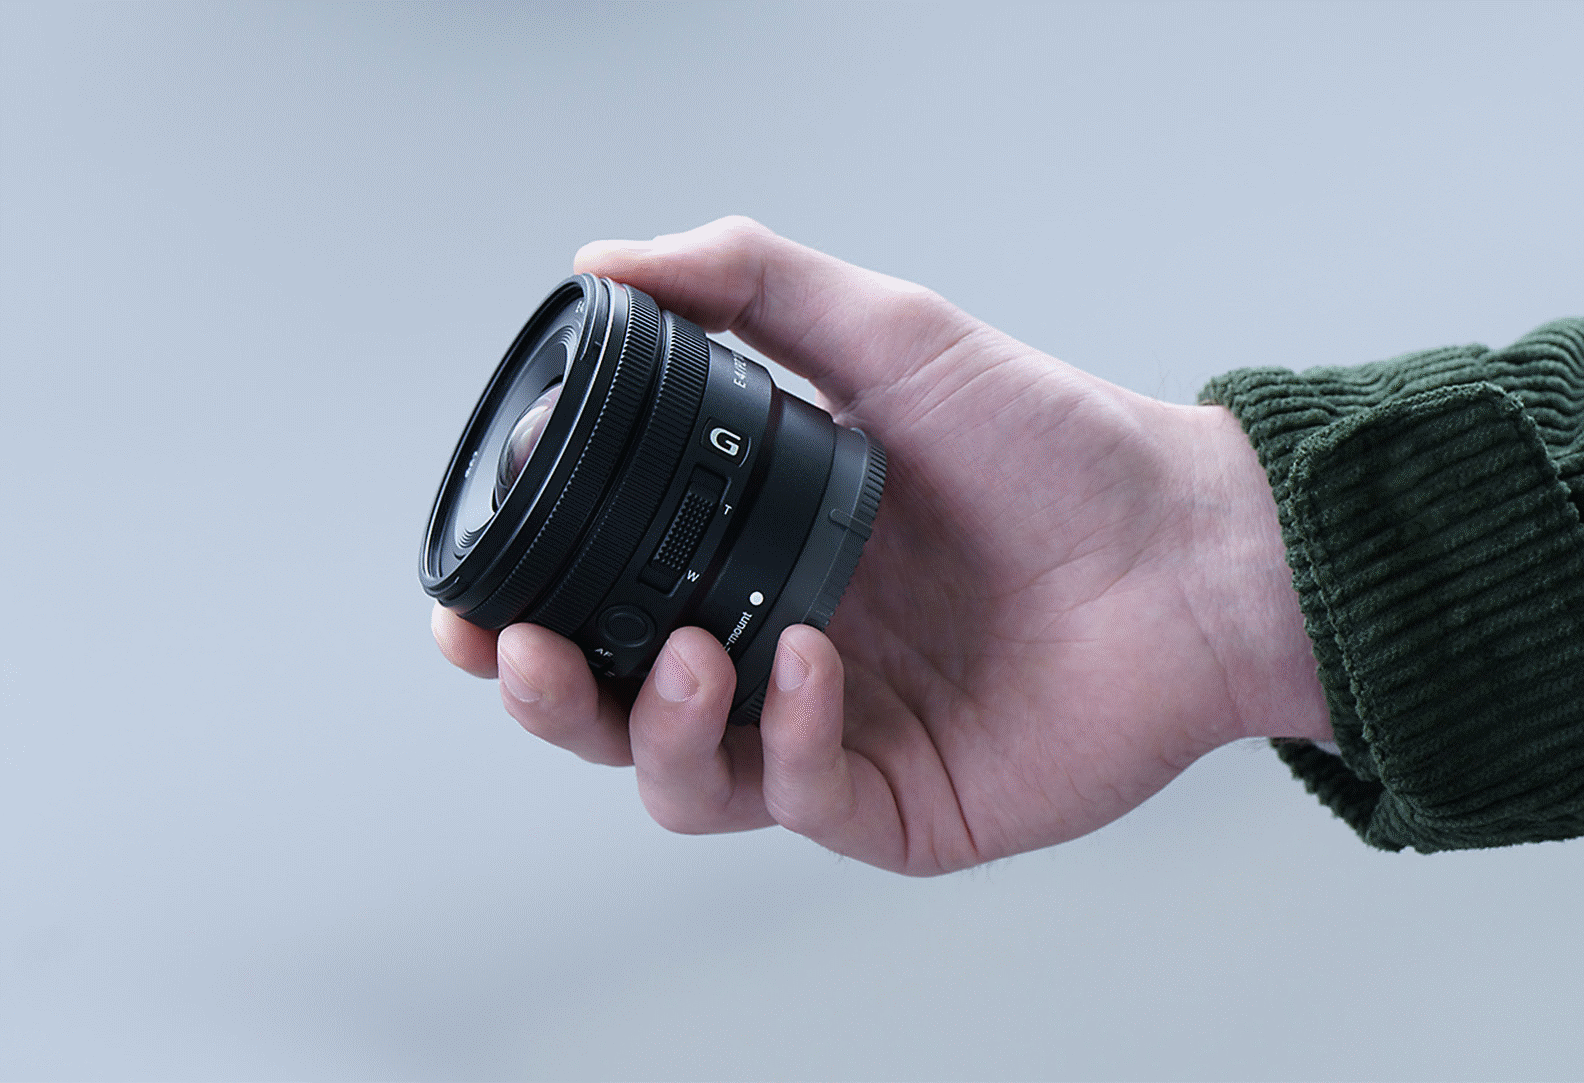 Bild på en hand som håller i E PZ 10–20 mm f4 G och visar att objektivet är litet nog att rymmas i handen